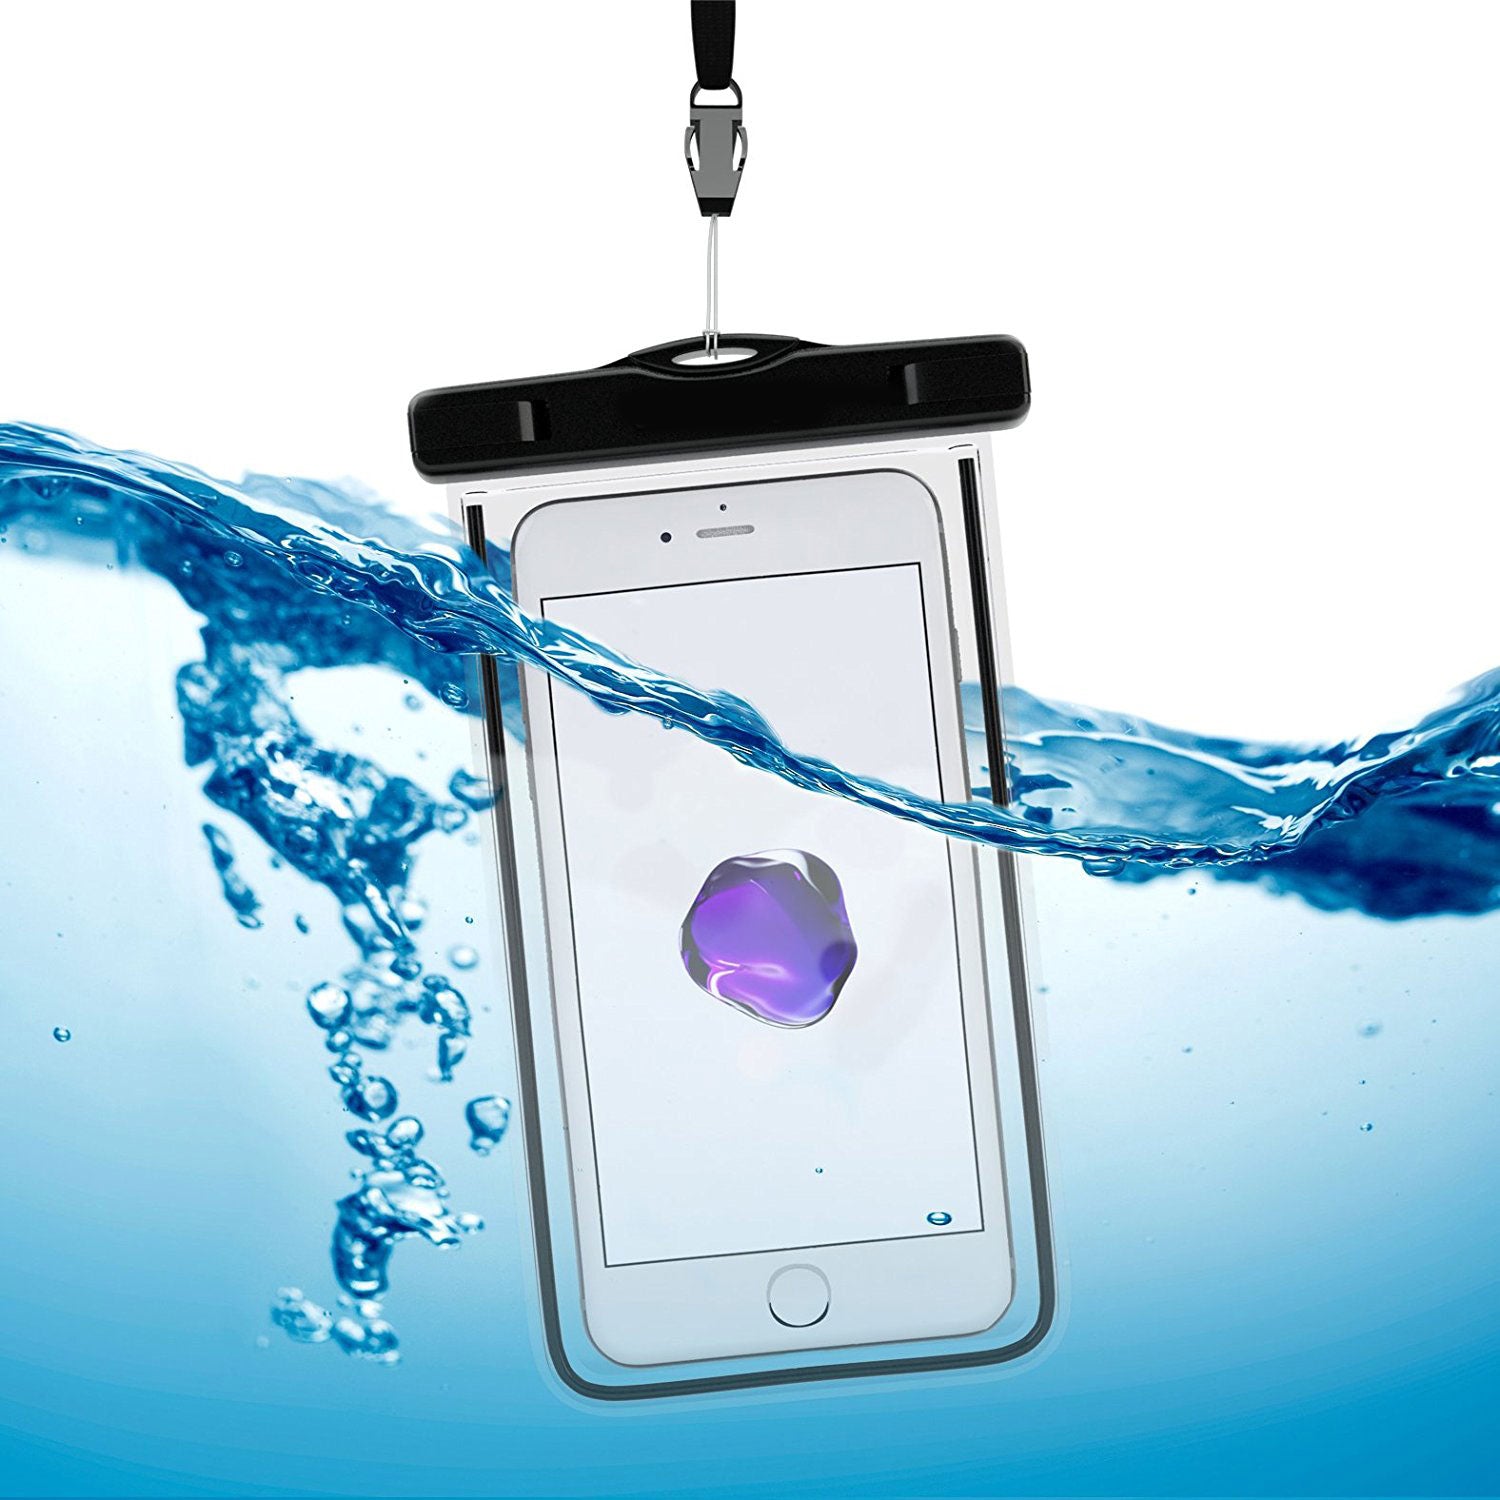 Wasserdichte Hülle für iPhone, Smartphone und Mobiltelefone